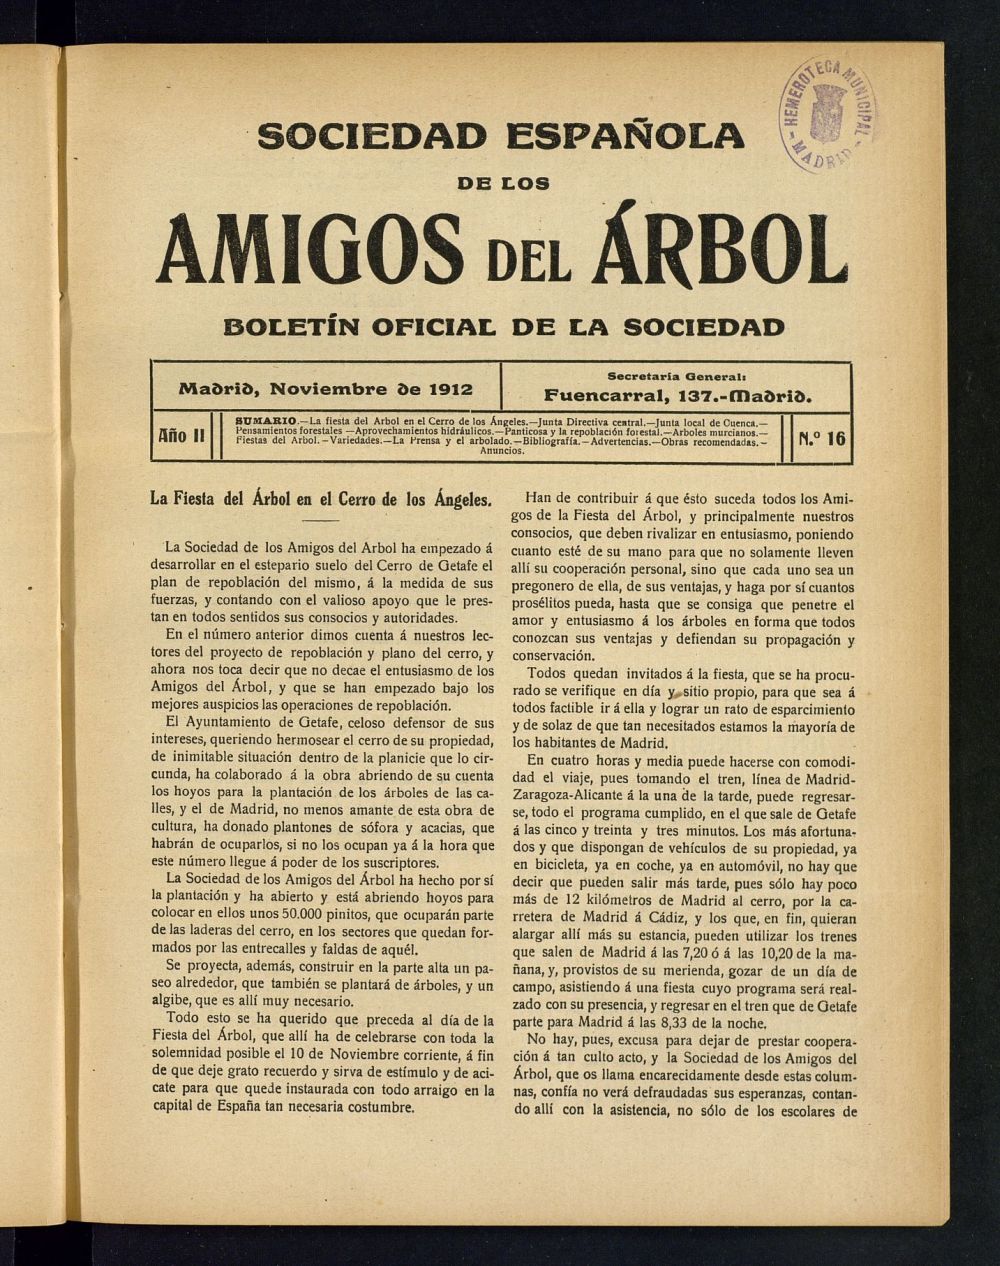 Boletn Comisin organizadora de la Sociedad Espaola de los amigos del rbol de noviembre de 1912